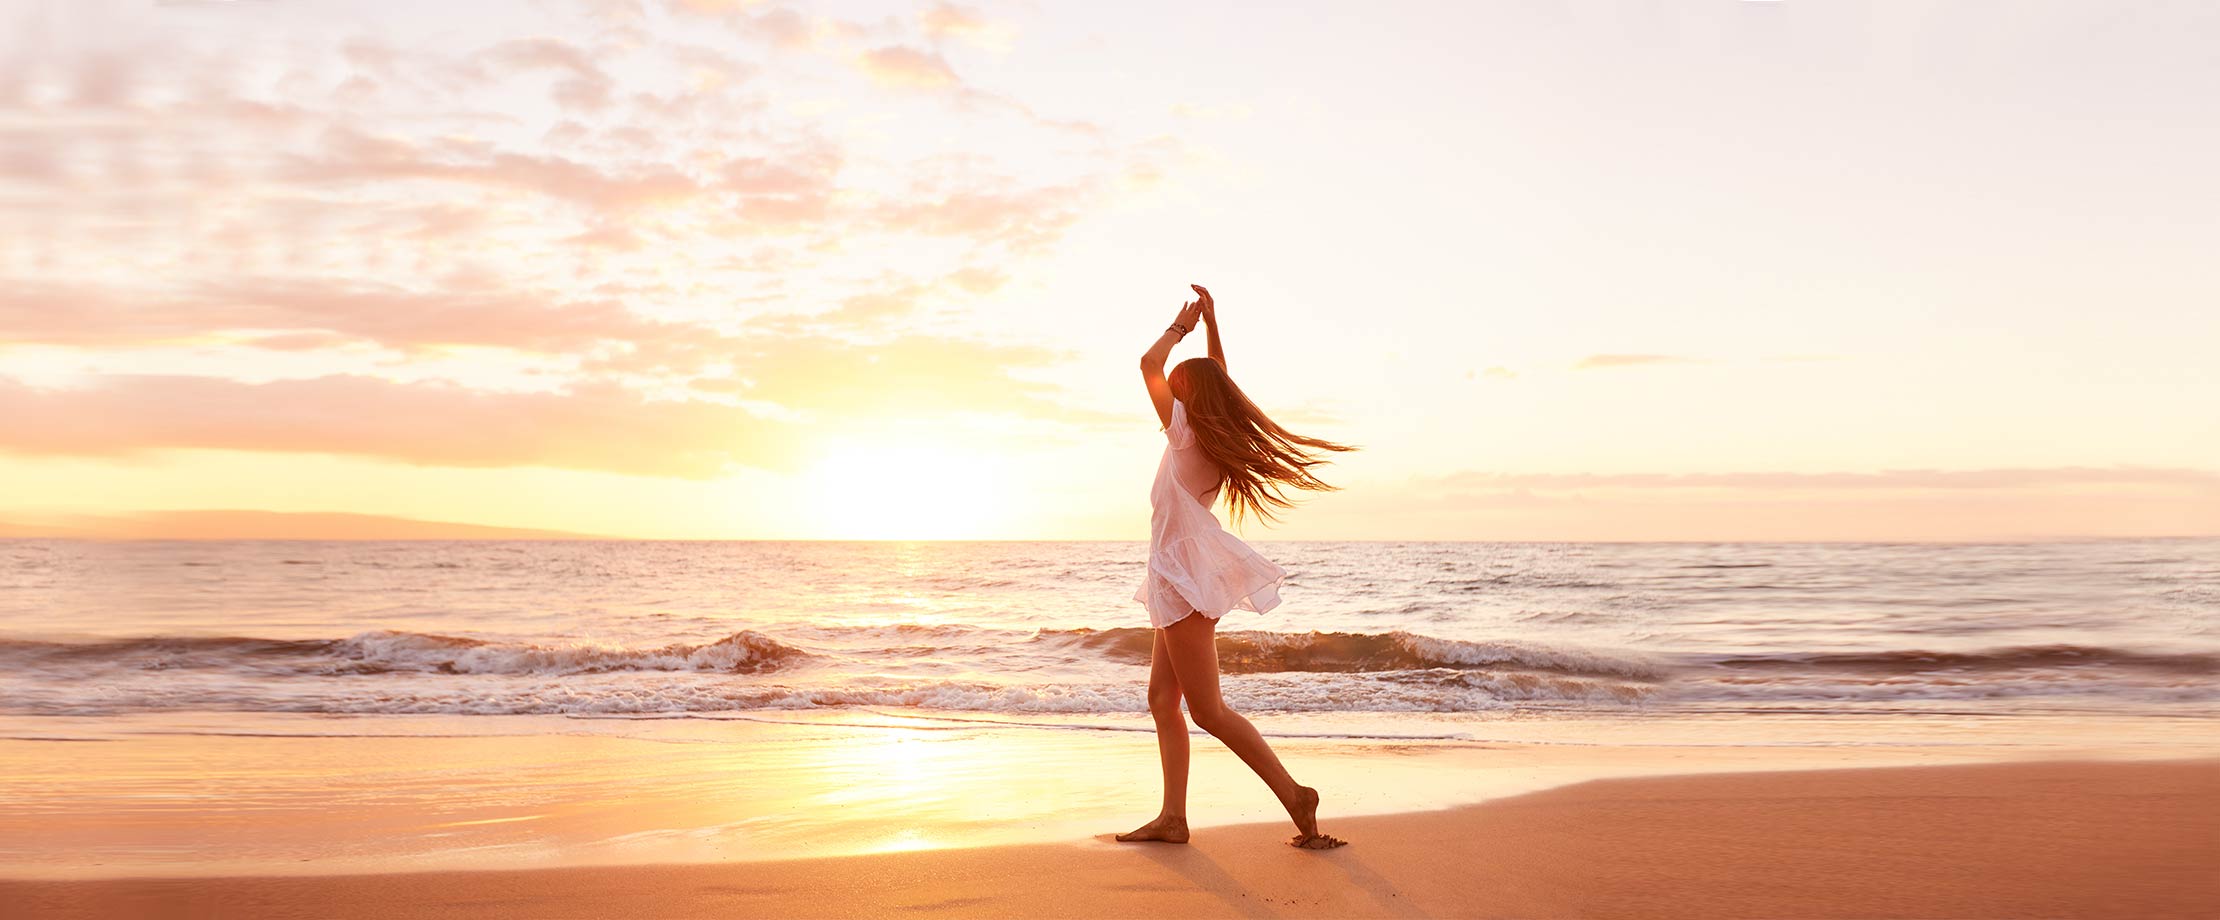 Eine junge Frau mit langen, hellen Haaren tanzt in einem weißen, kurzen Sommerkleid den Strand entlang. Sie hat die Hände während einer Drehung erhoben. Im Hintergrund sieht man den Sonnenuntergang über dem Meer.